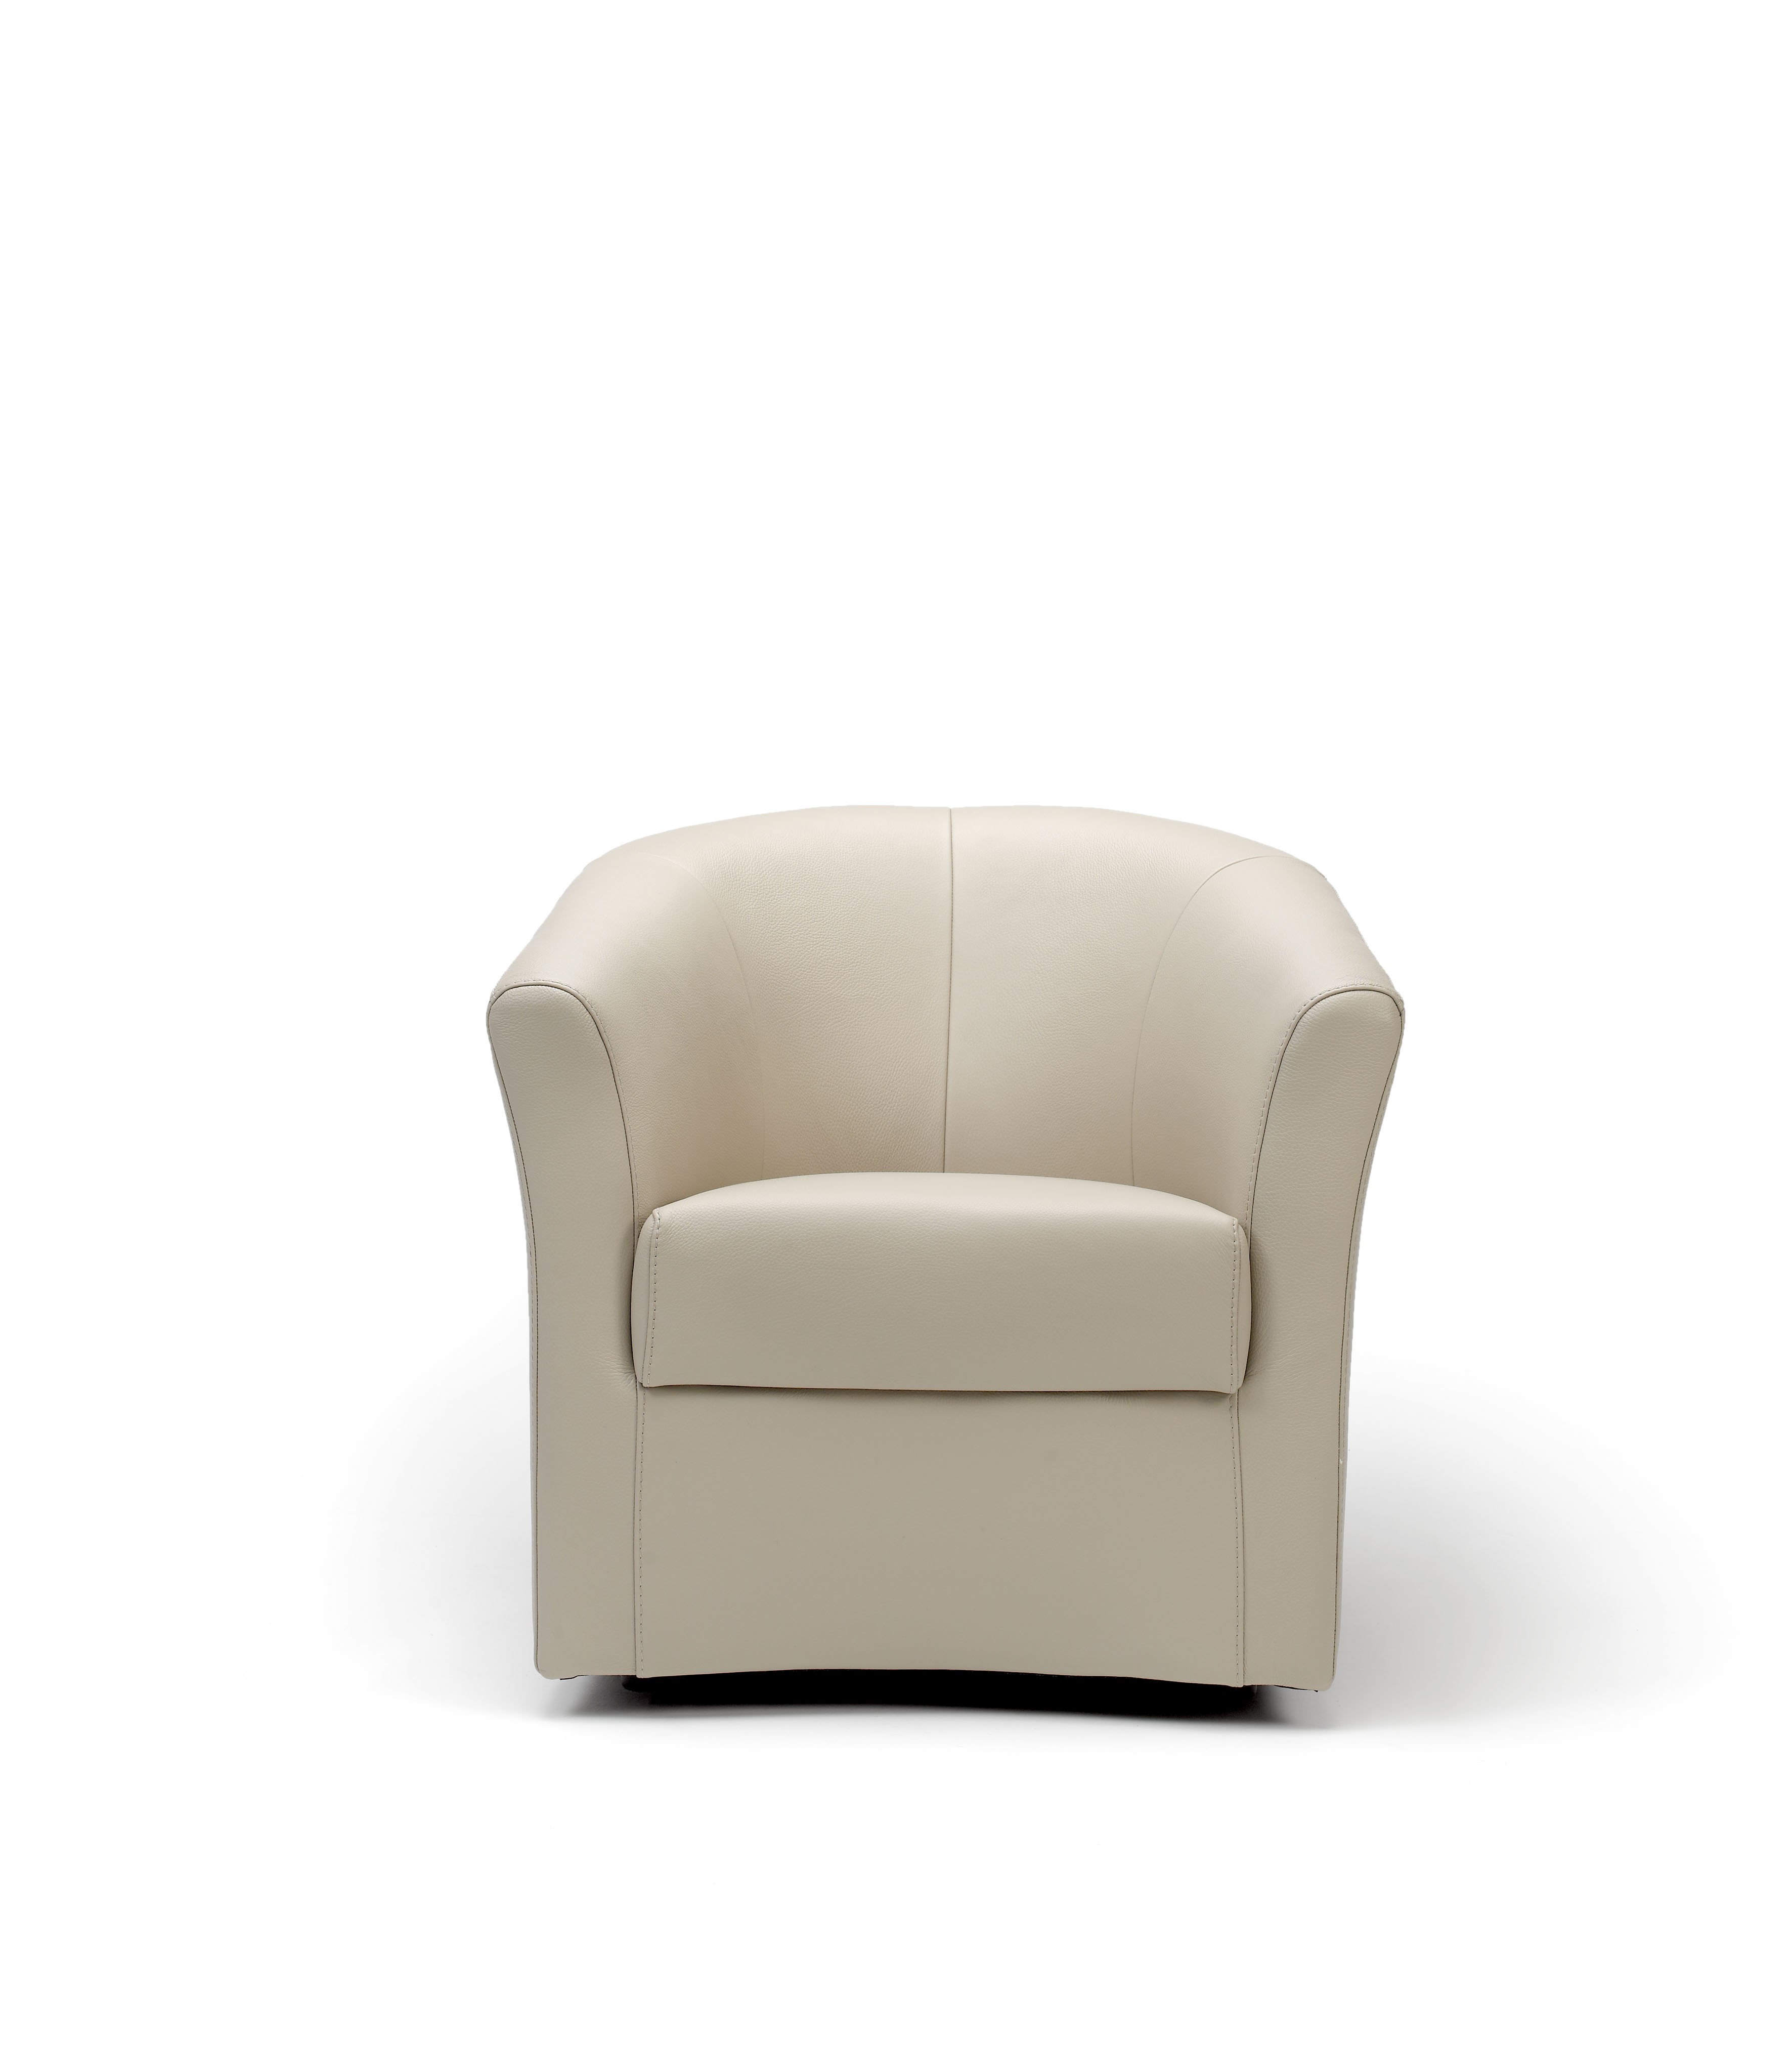 Yoyo Chair | Rom | Made in Belgium